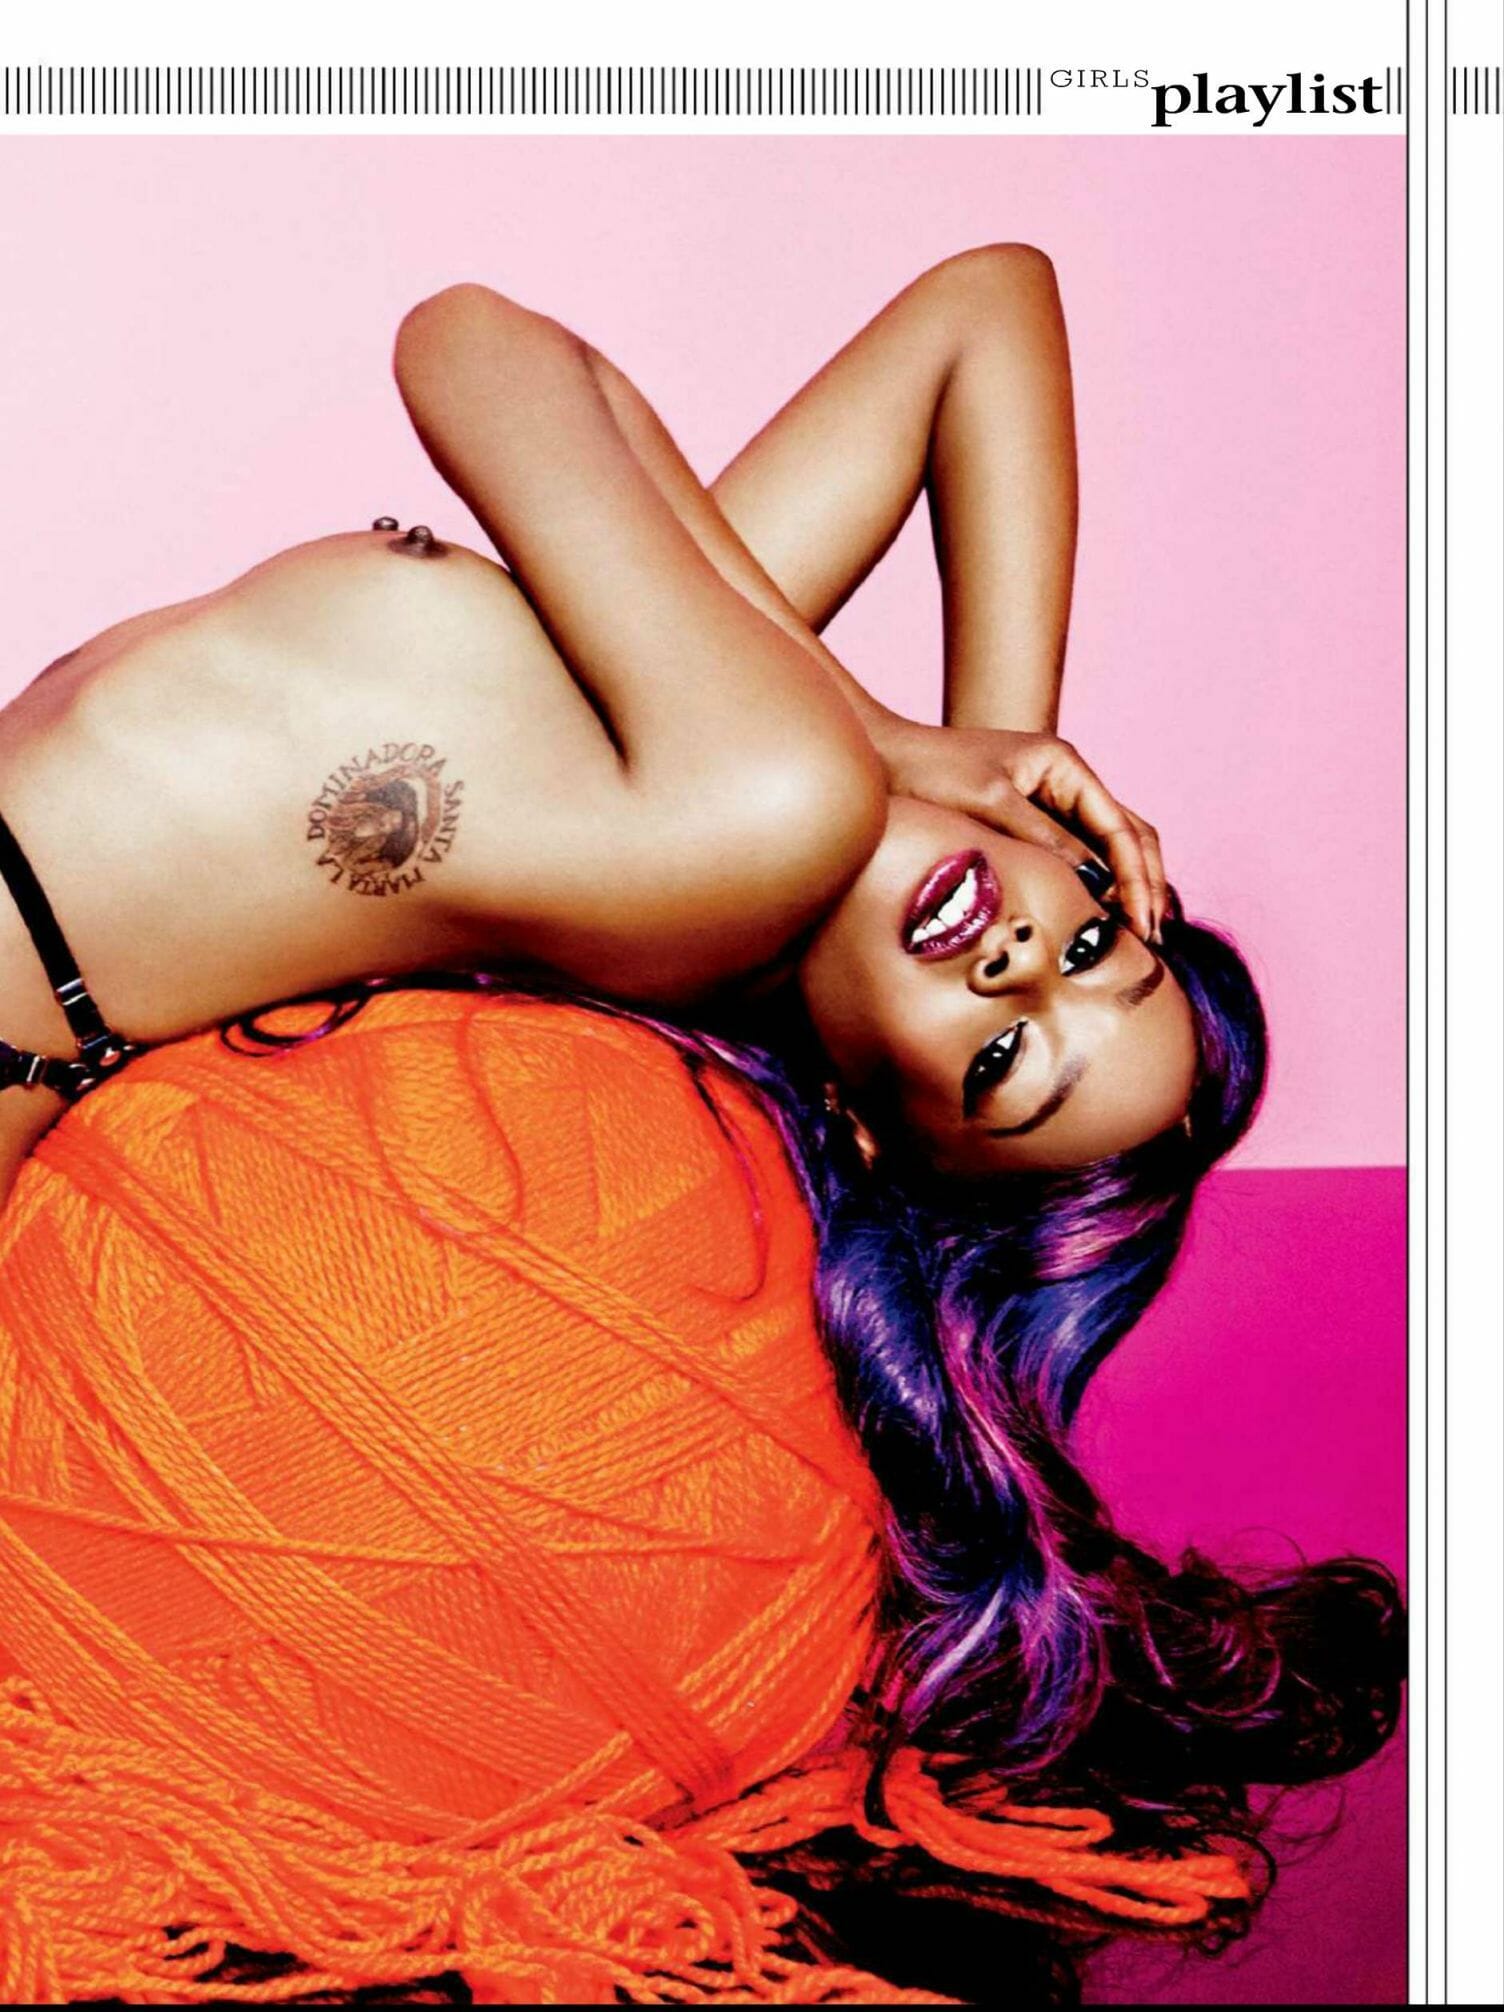 Azealia Banks leaked Playboy nipple